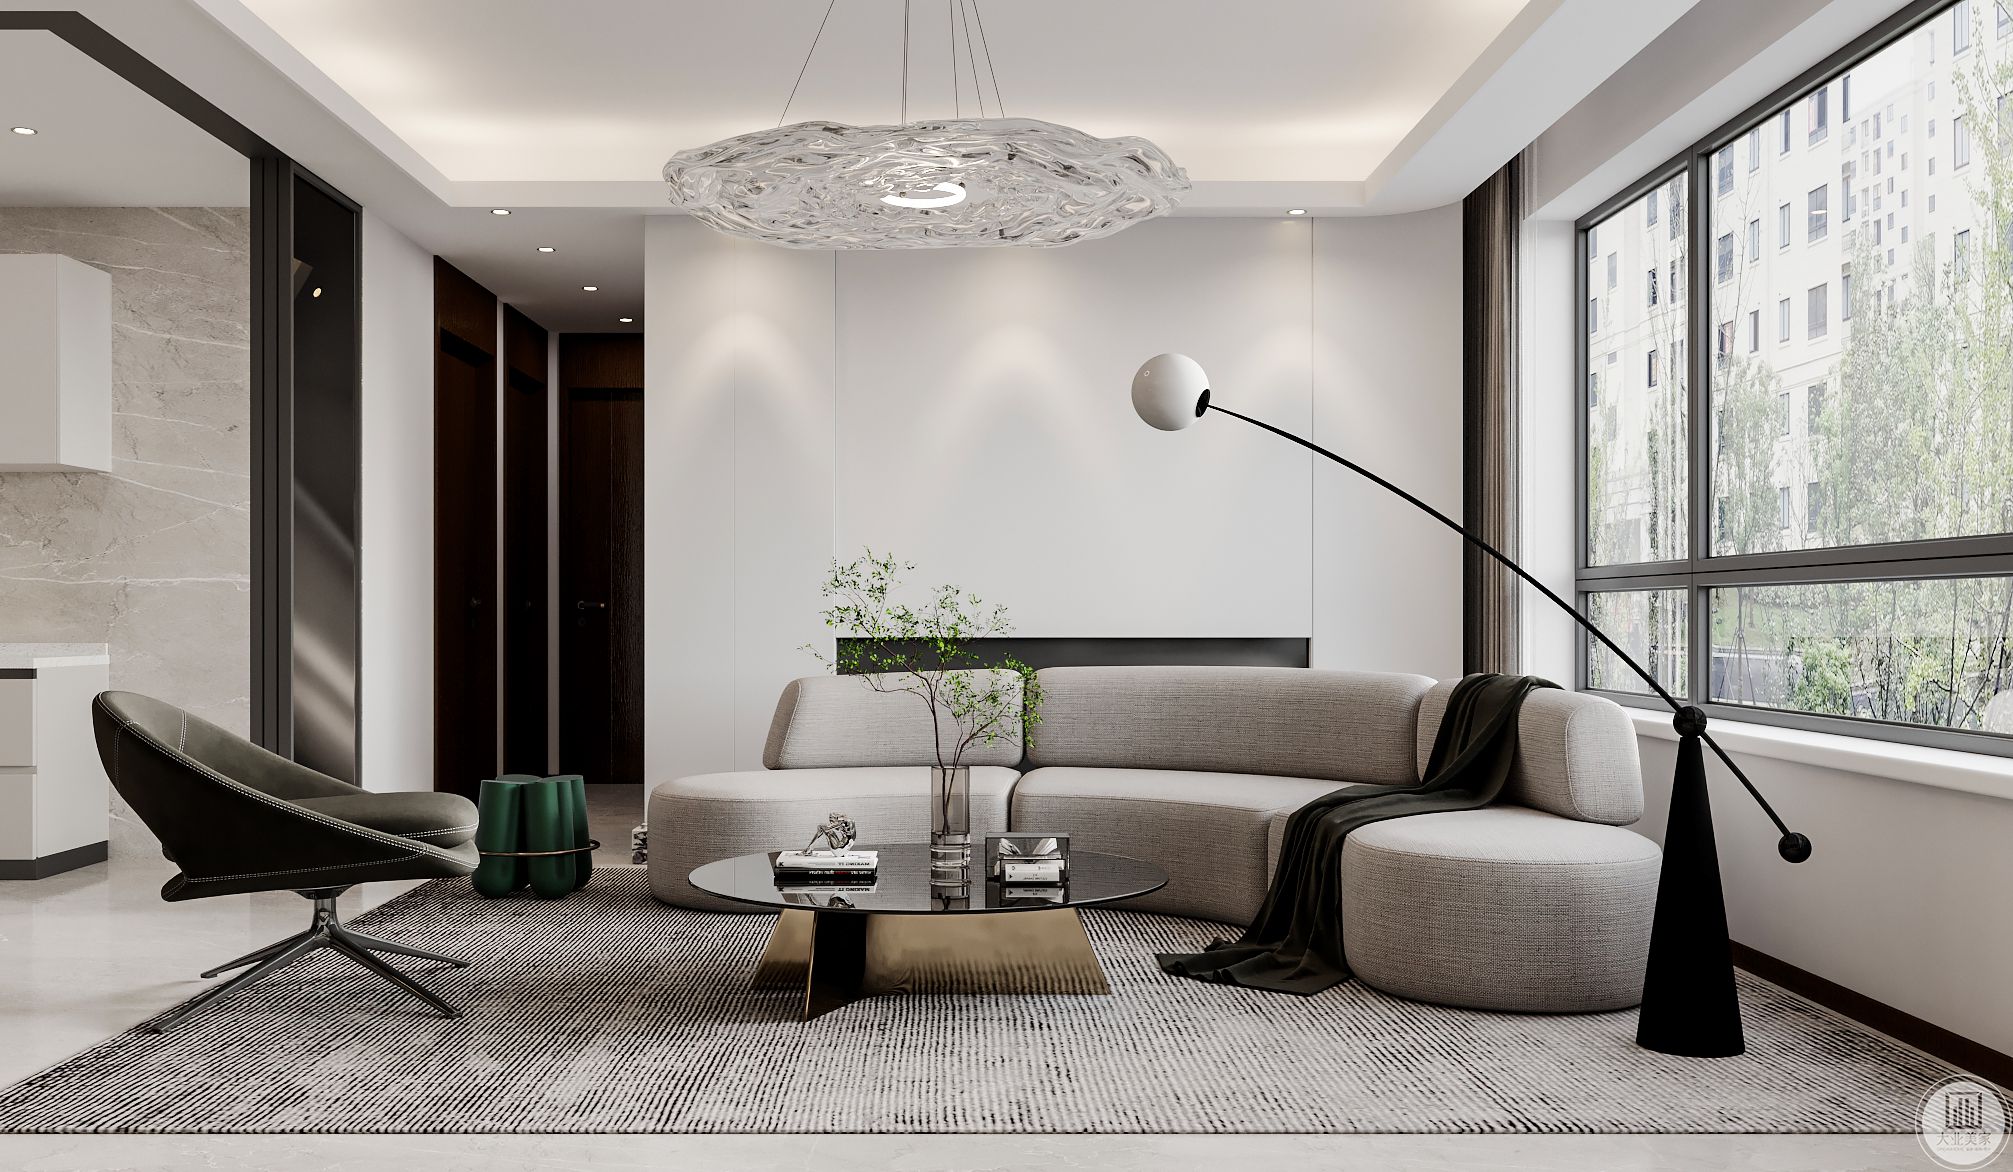 客厅金属元素的运用现代感十足，深绿色边几和透明吊灯造型新颖